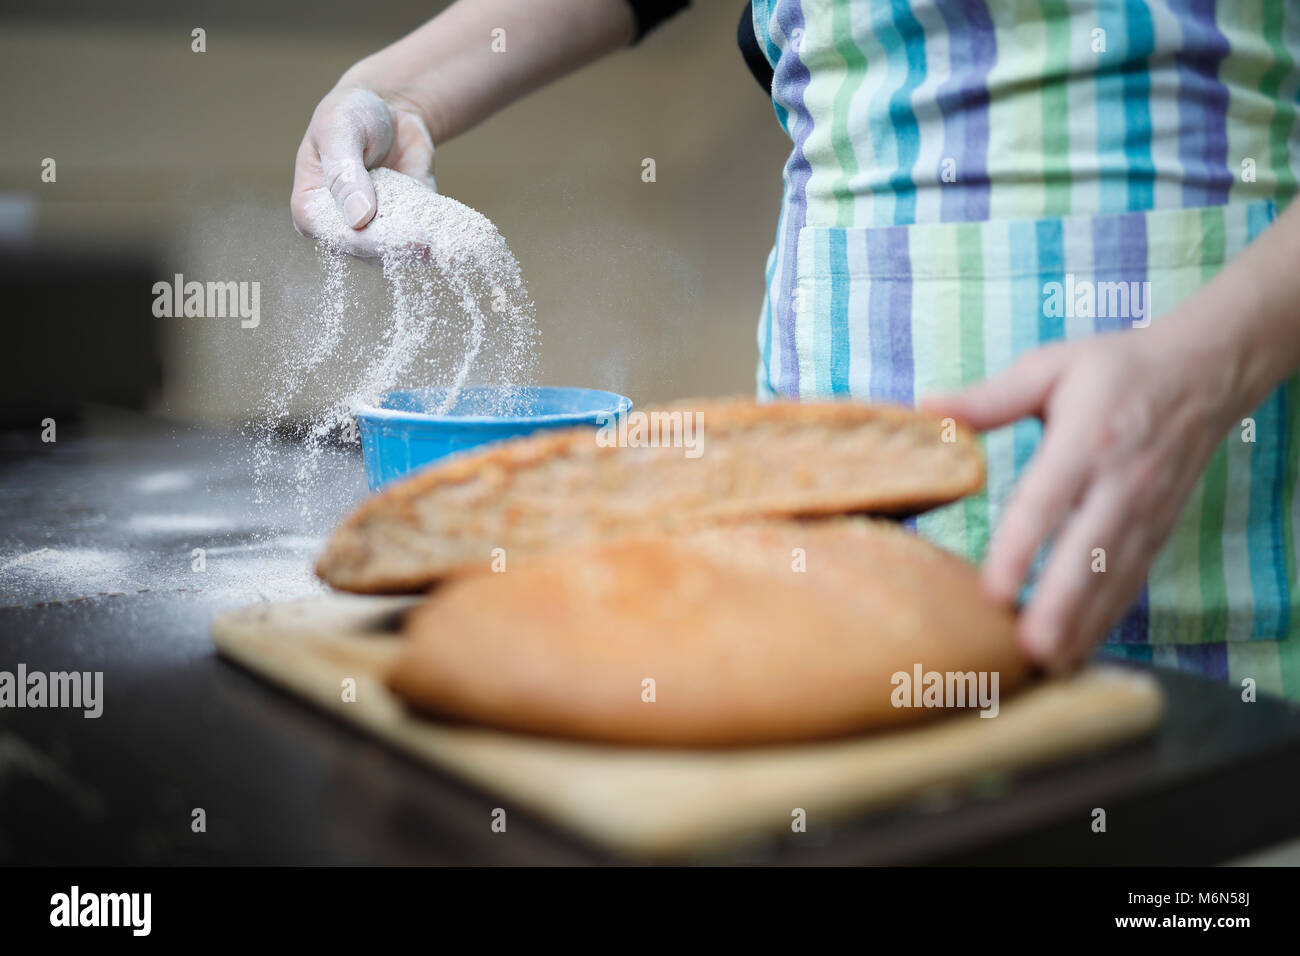 Accueil fait partie intégrante du pain sur table en bois. Femme répand la farine dans le bol. Banque D'Images